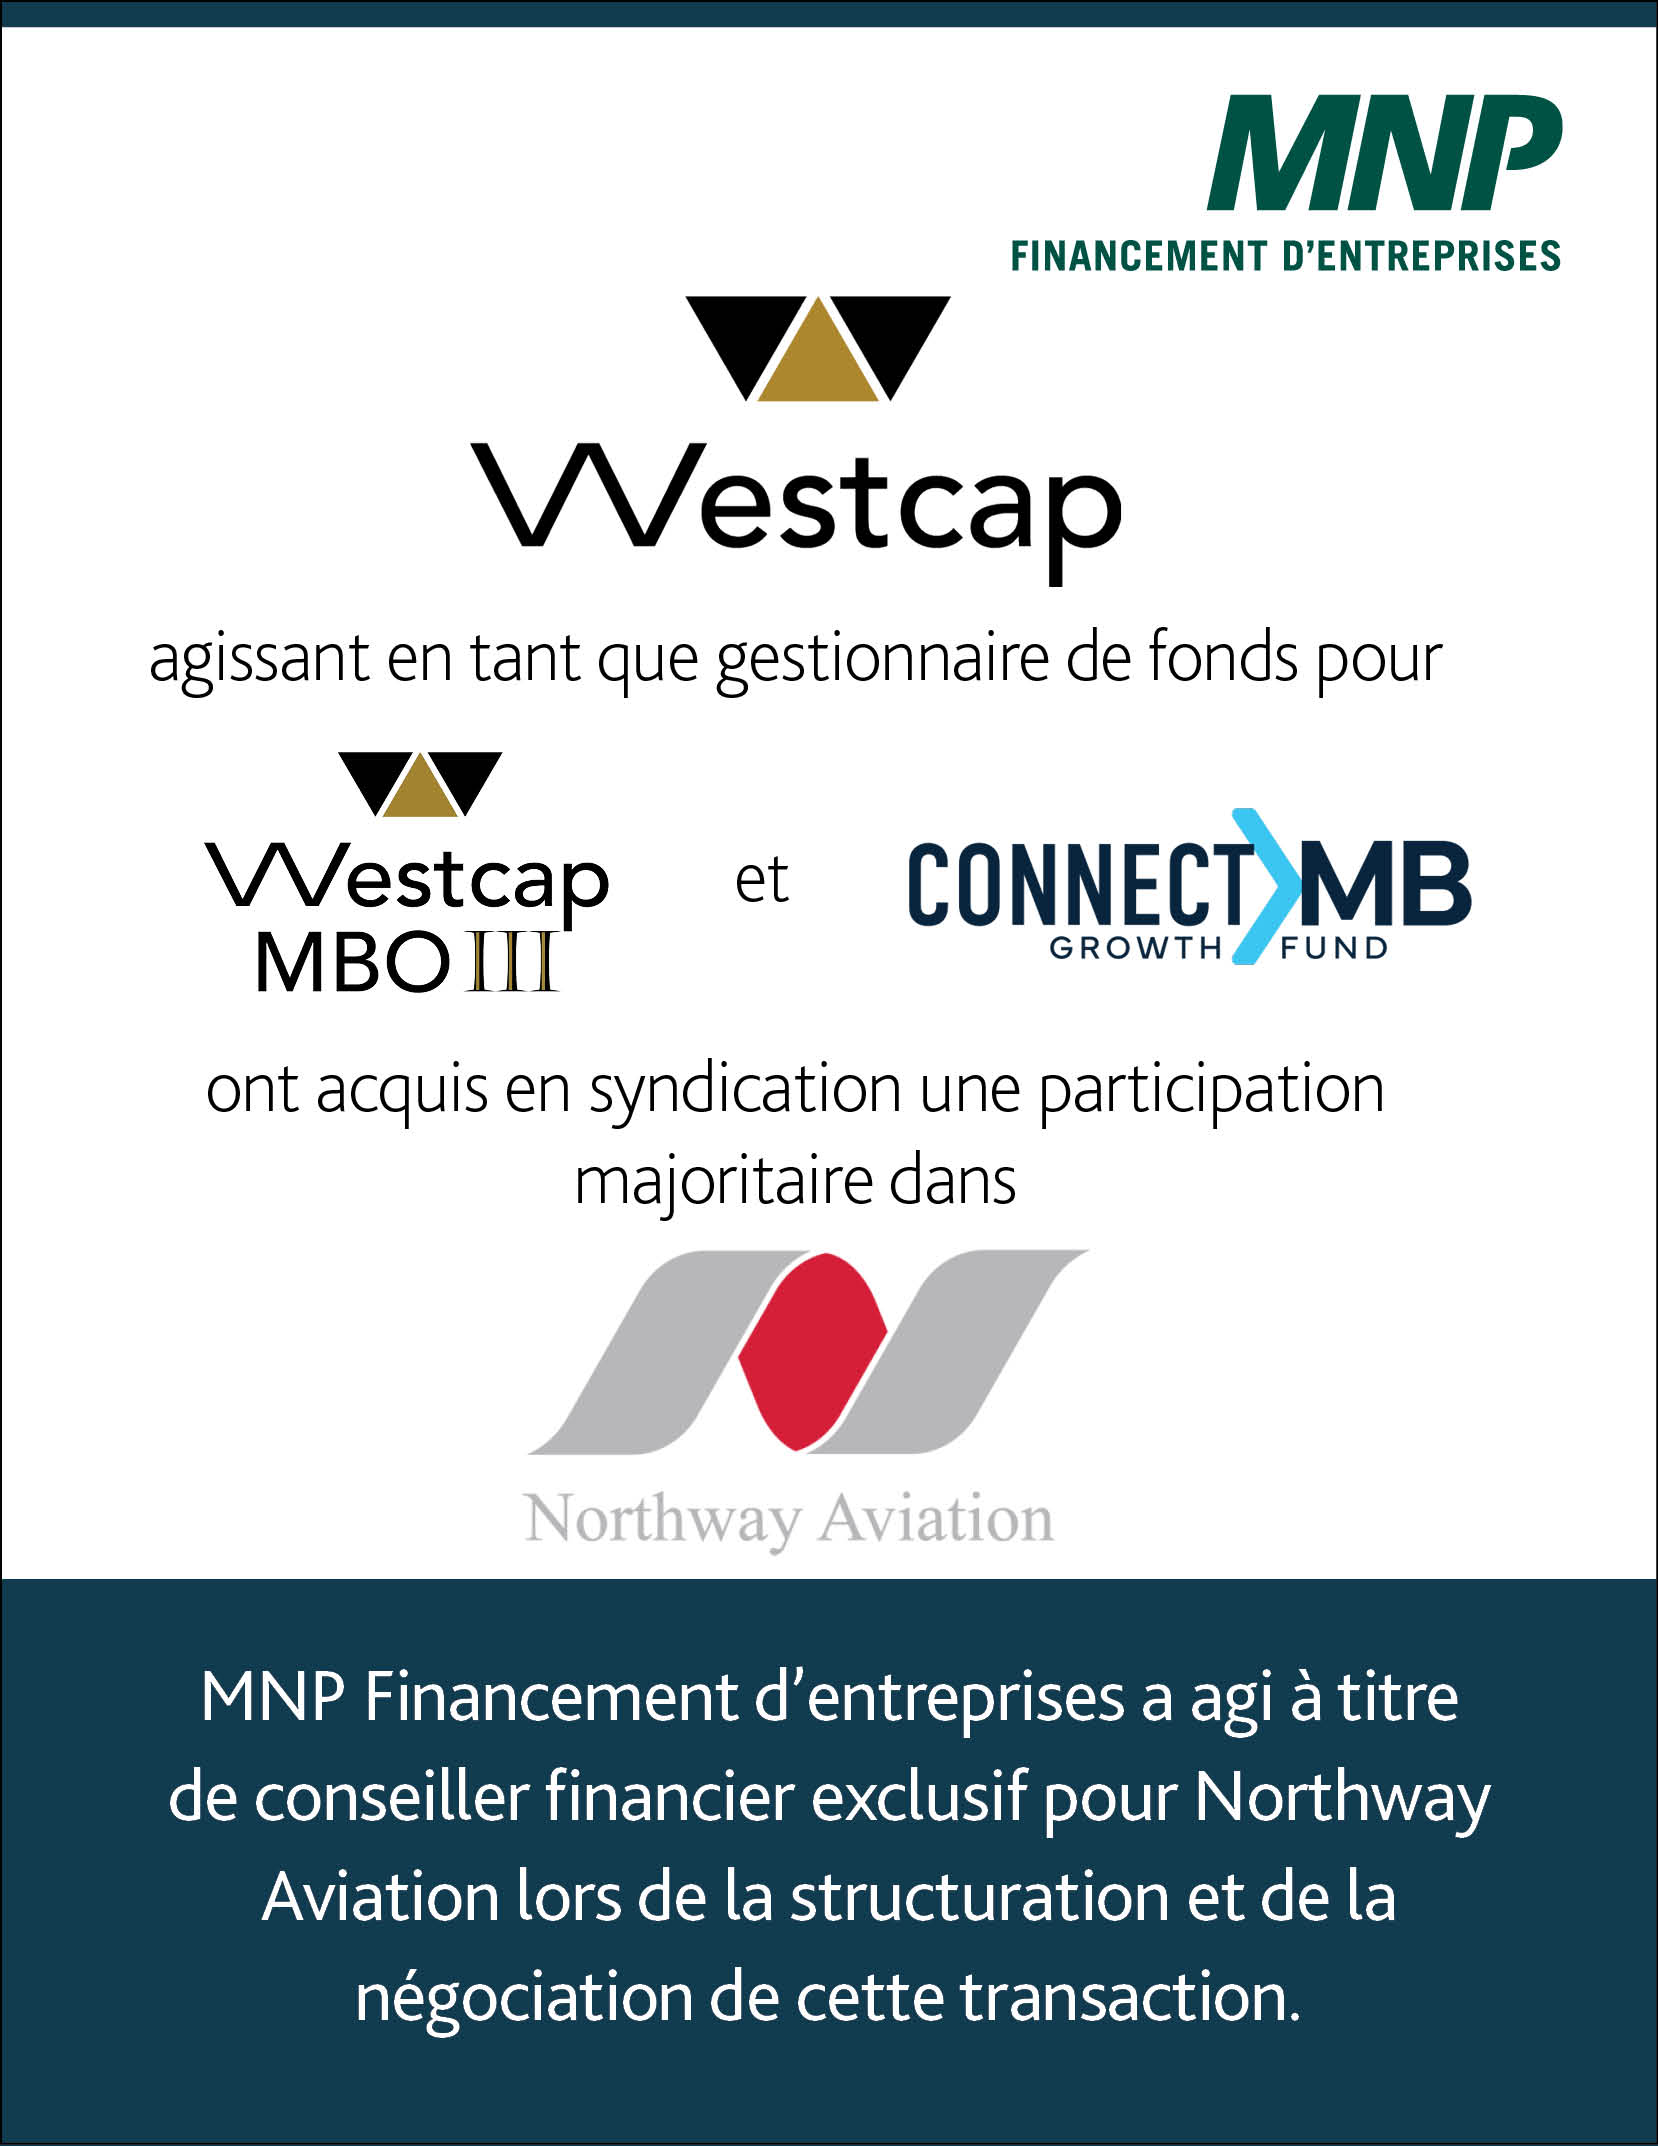 Westcap, agissant en tant que gestionnaire de fonds pour Westcap MBO III et Connect MB, a acquis une participation majoritaire dans Northway Aviation.